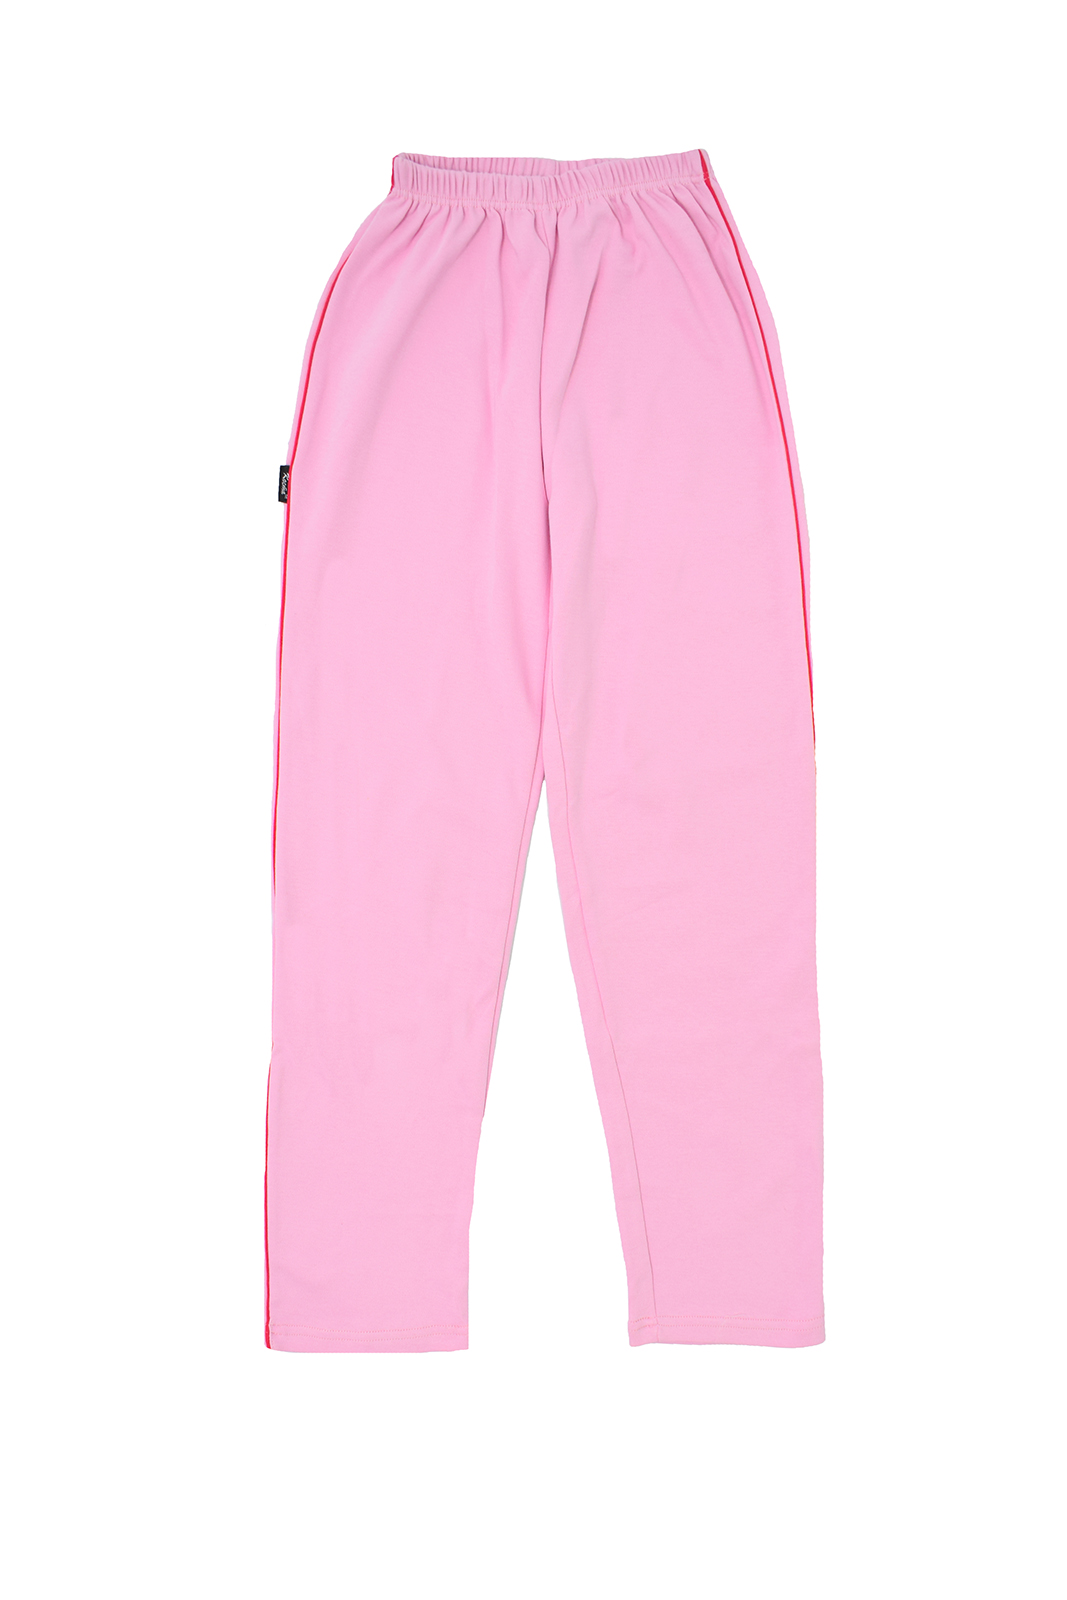 

Спортивные штаны для девочки Kosta 591 р64 128см розовый 13918